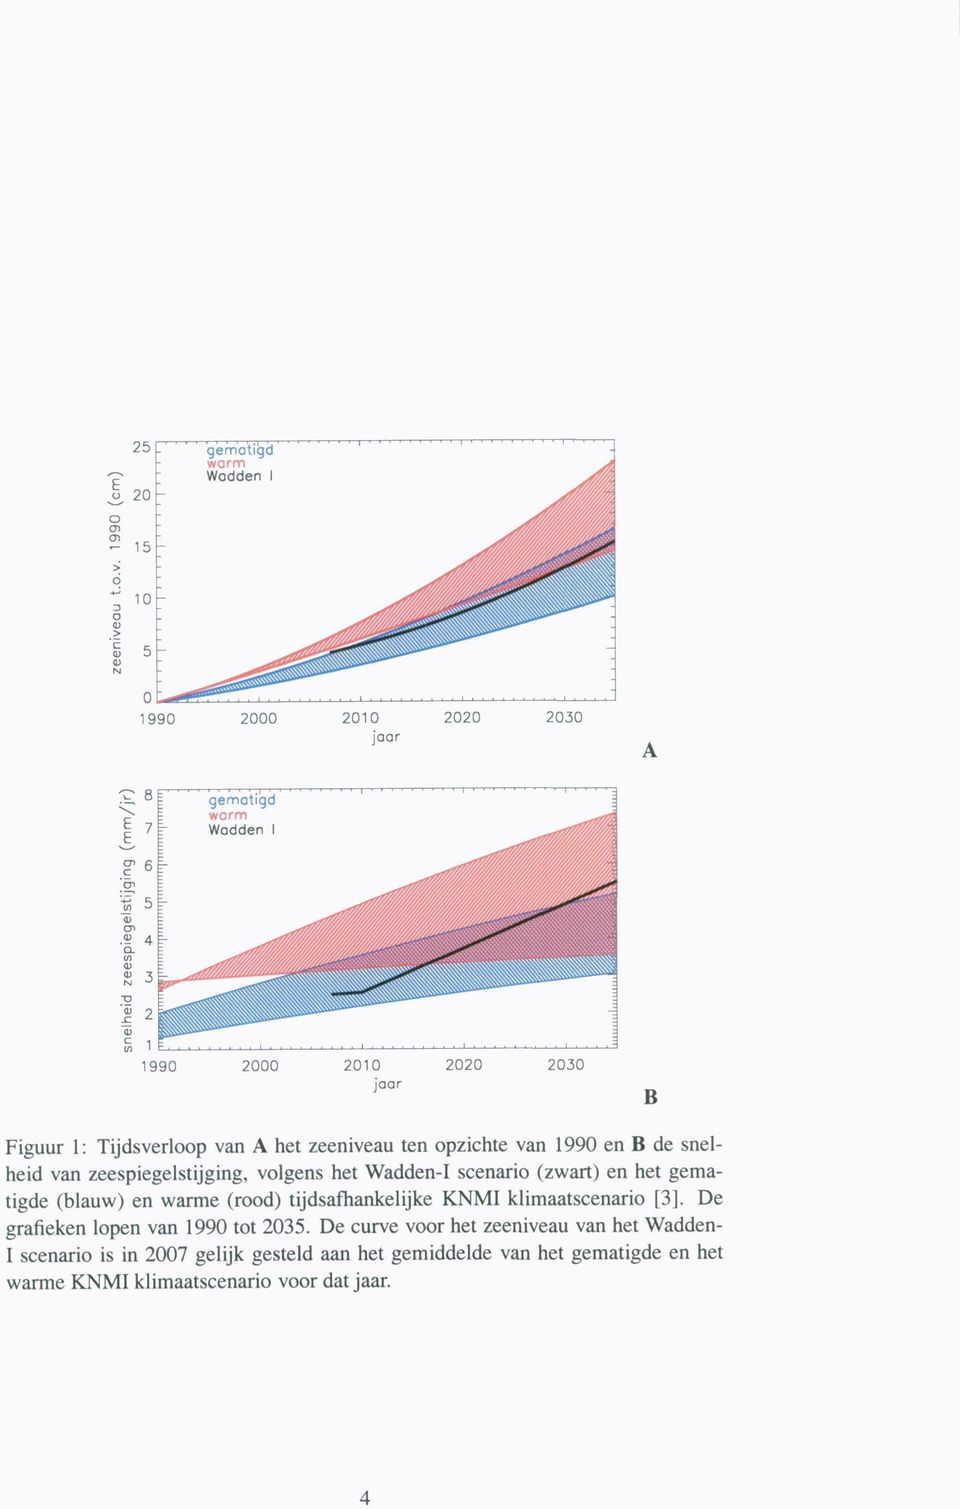 tijdsafhankelijke KNMI klimaatscenario [3]. De grafieken lopen van 1990 tot 2035.